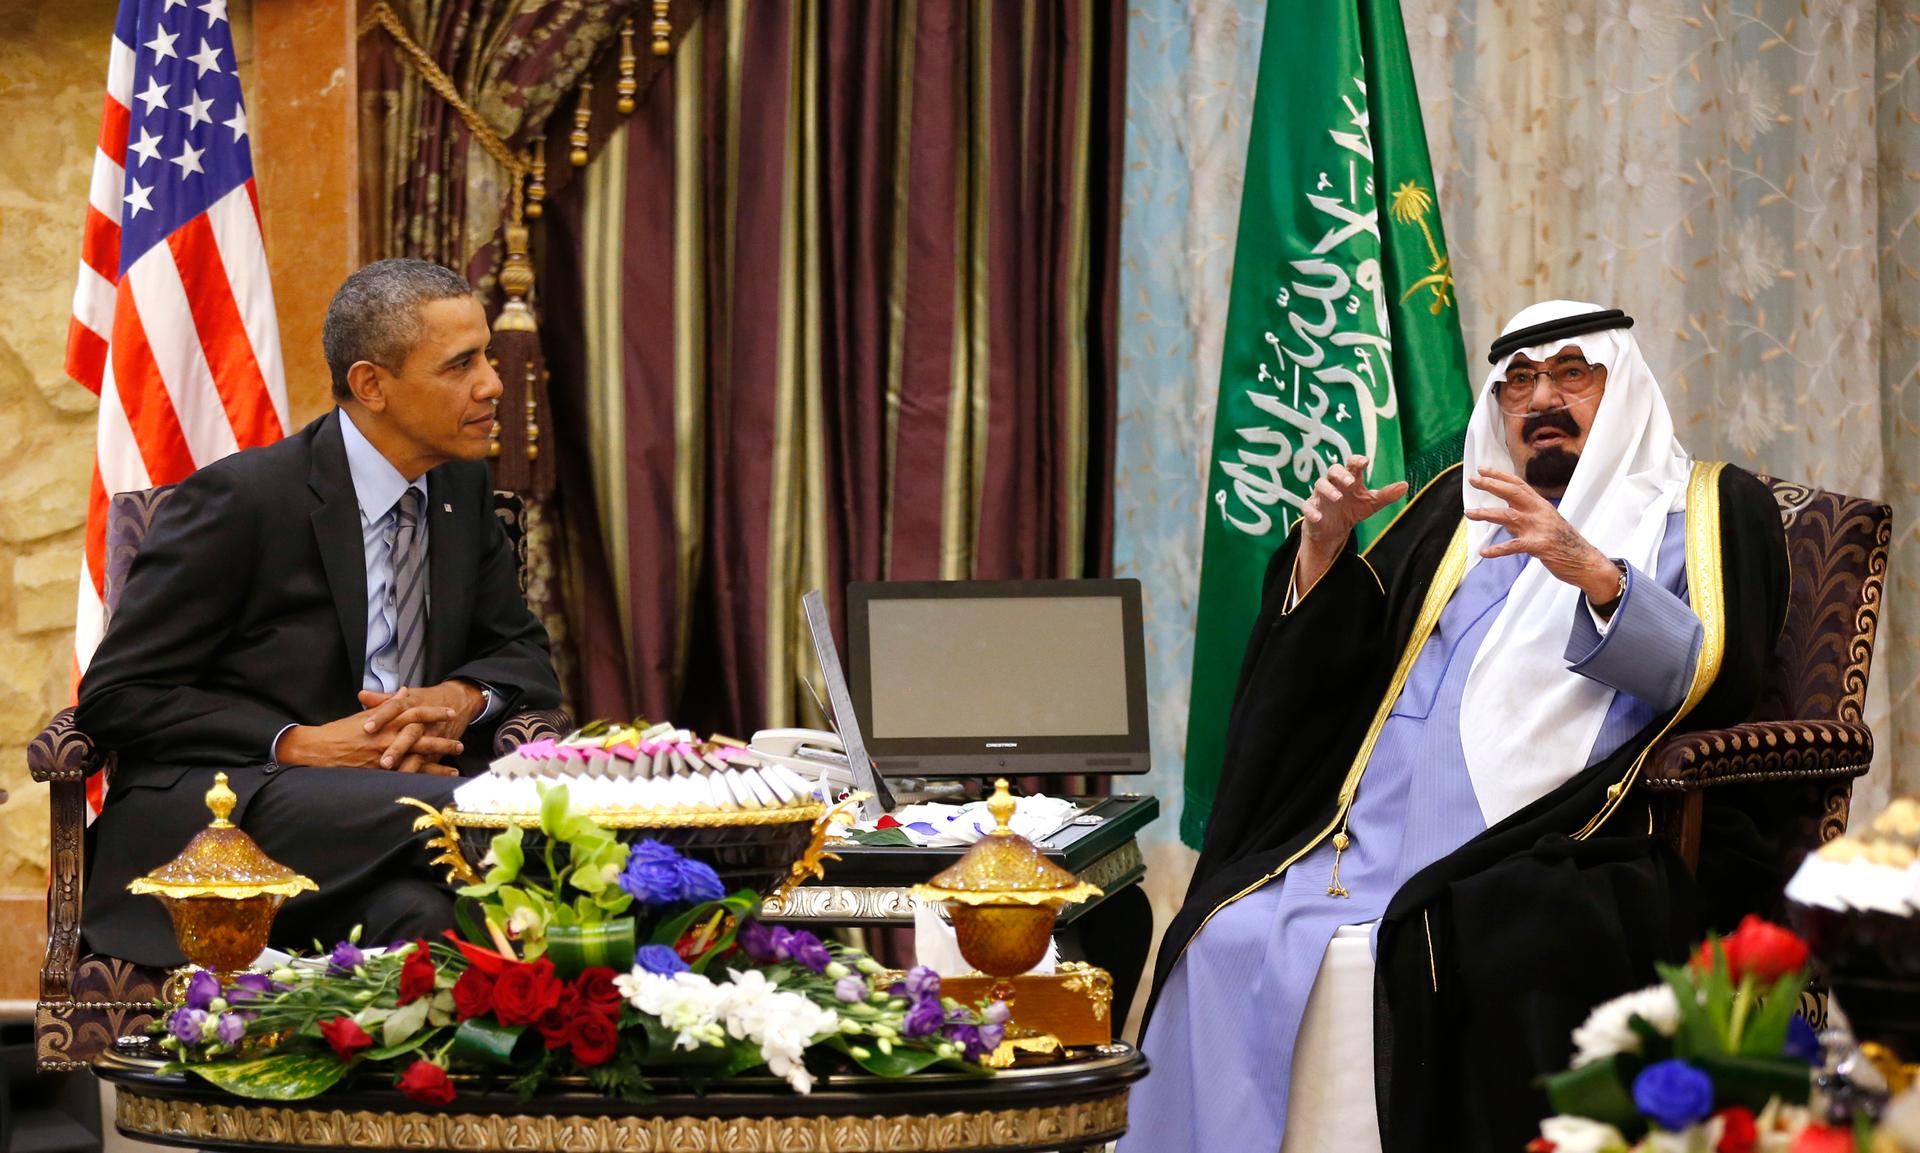 President Obama and King Abdullah